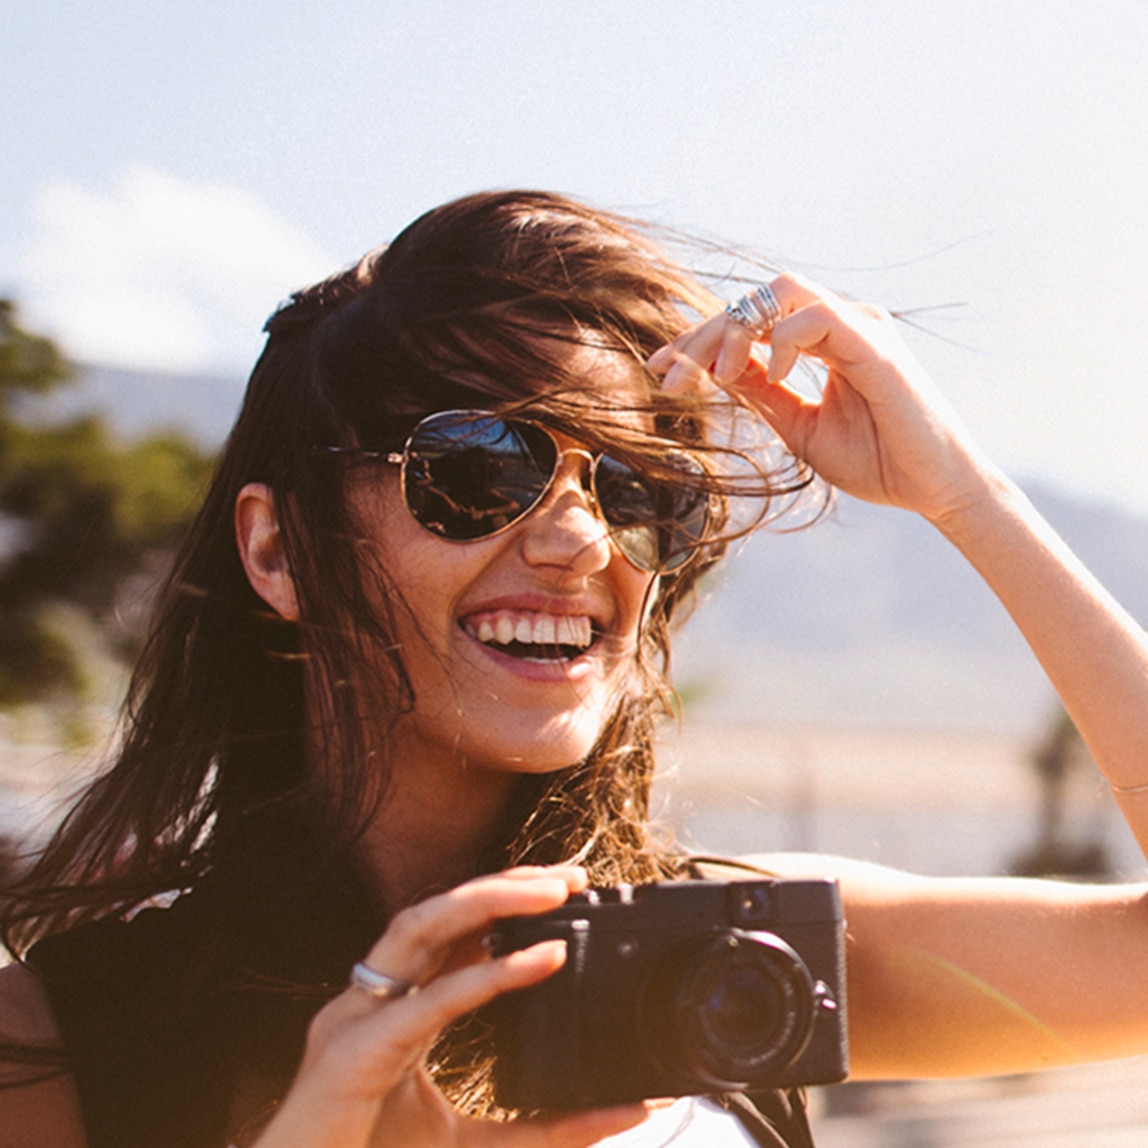 Una ragazza bruna con gli occhiali e i capelli al vento.